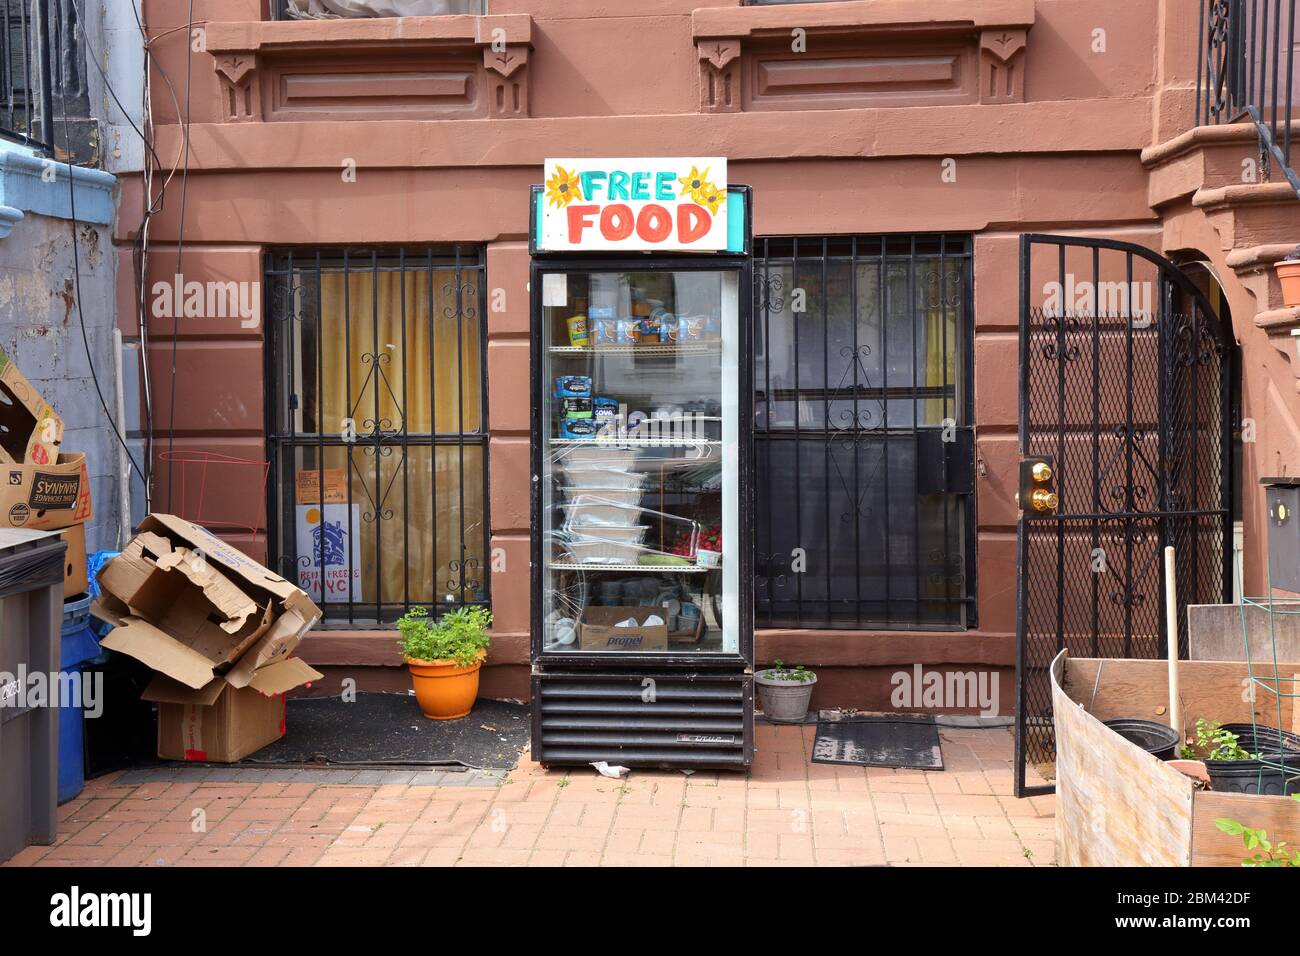 Un réfrigérateur de la communauté de nourriture gratuite à l'extérieur d'un bâtiment à Brooklyn pour aider les moins chanceux. Banque D'Images